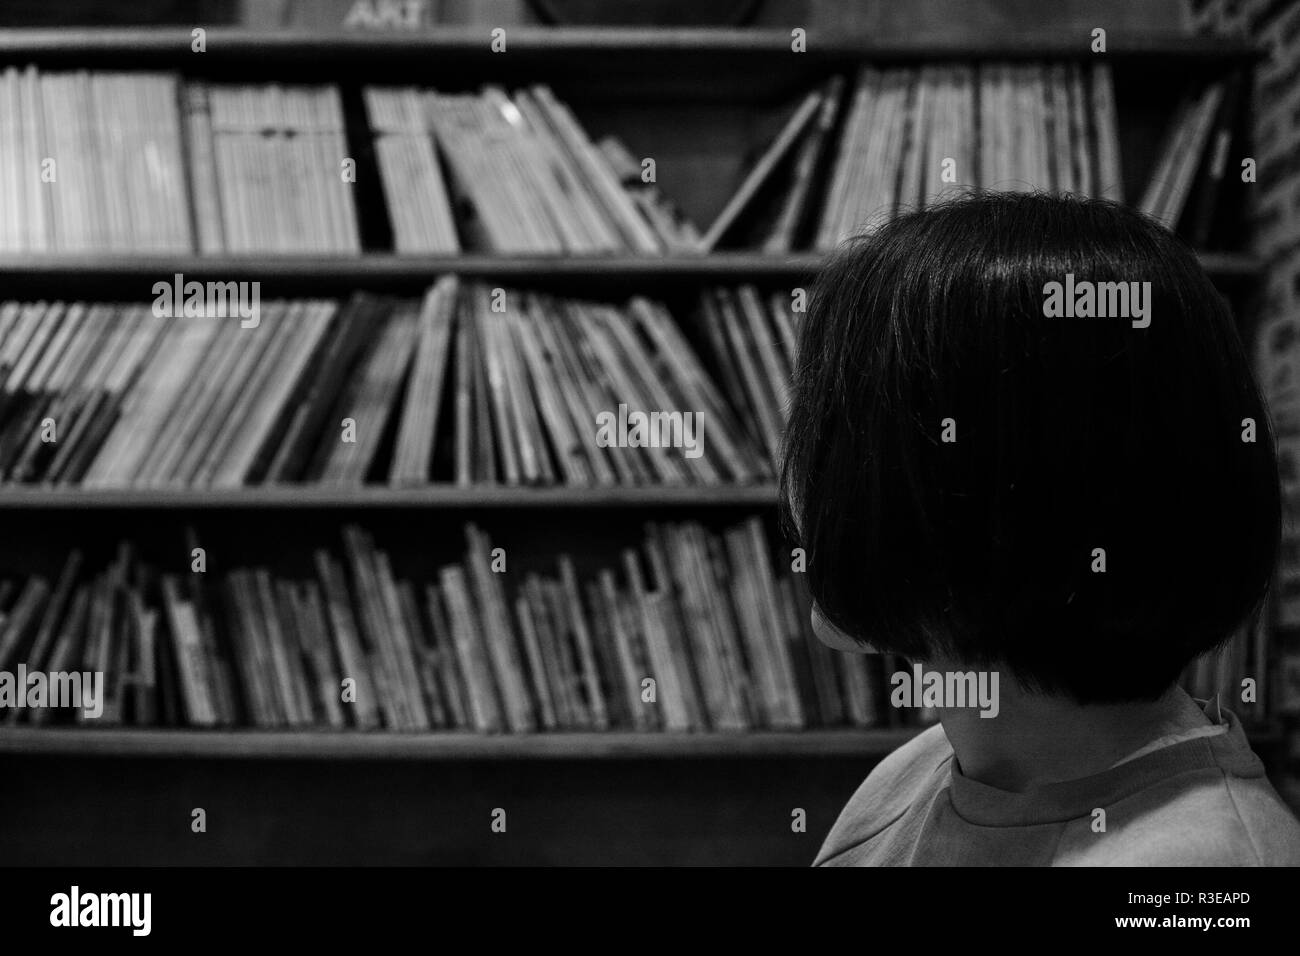 Eine Frau in den Zeilen der Bücher, die auf den Regalen, in Schwarz und Weiß Stockfoto